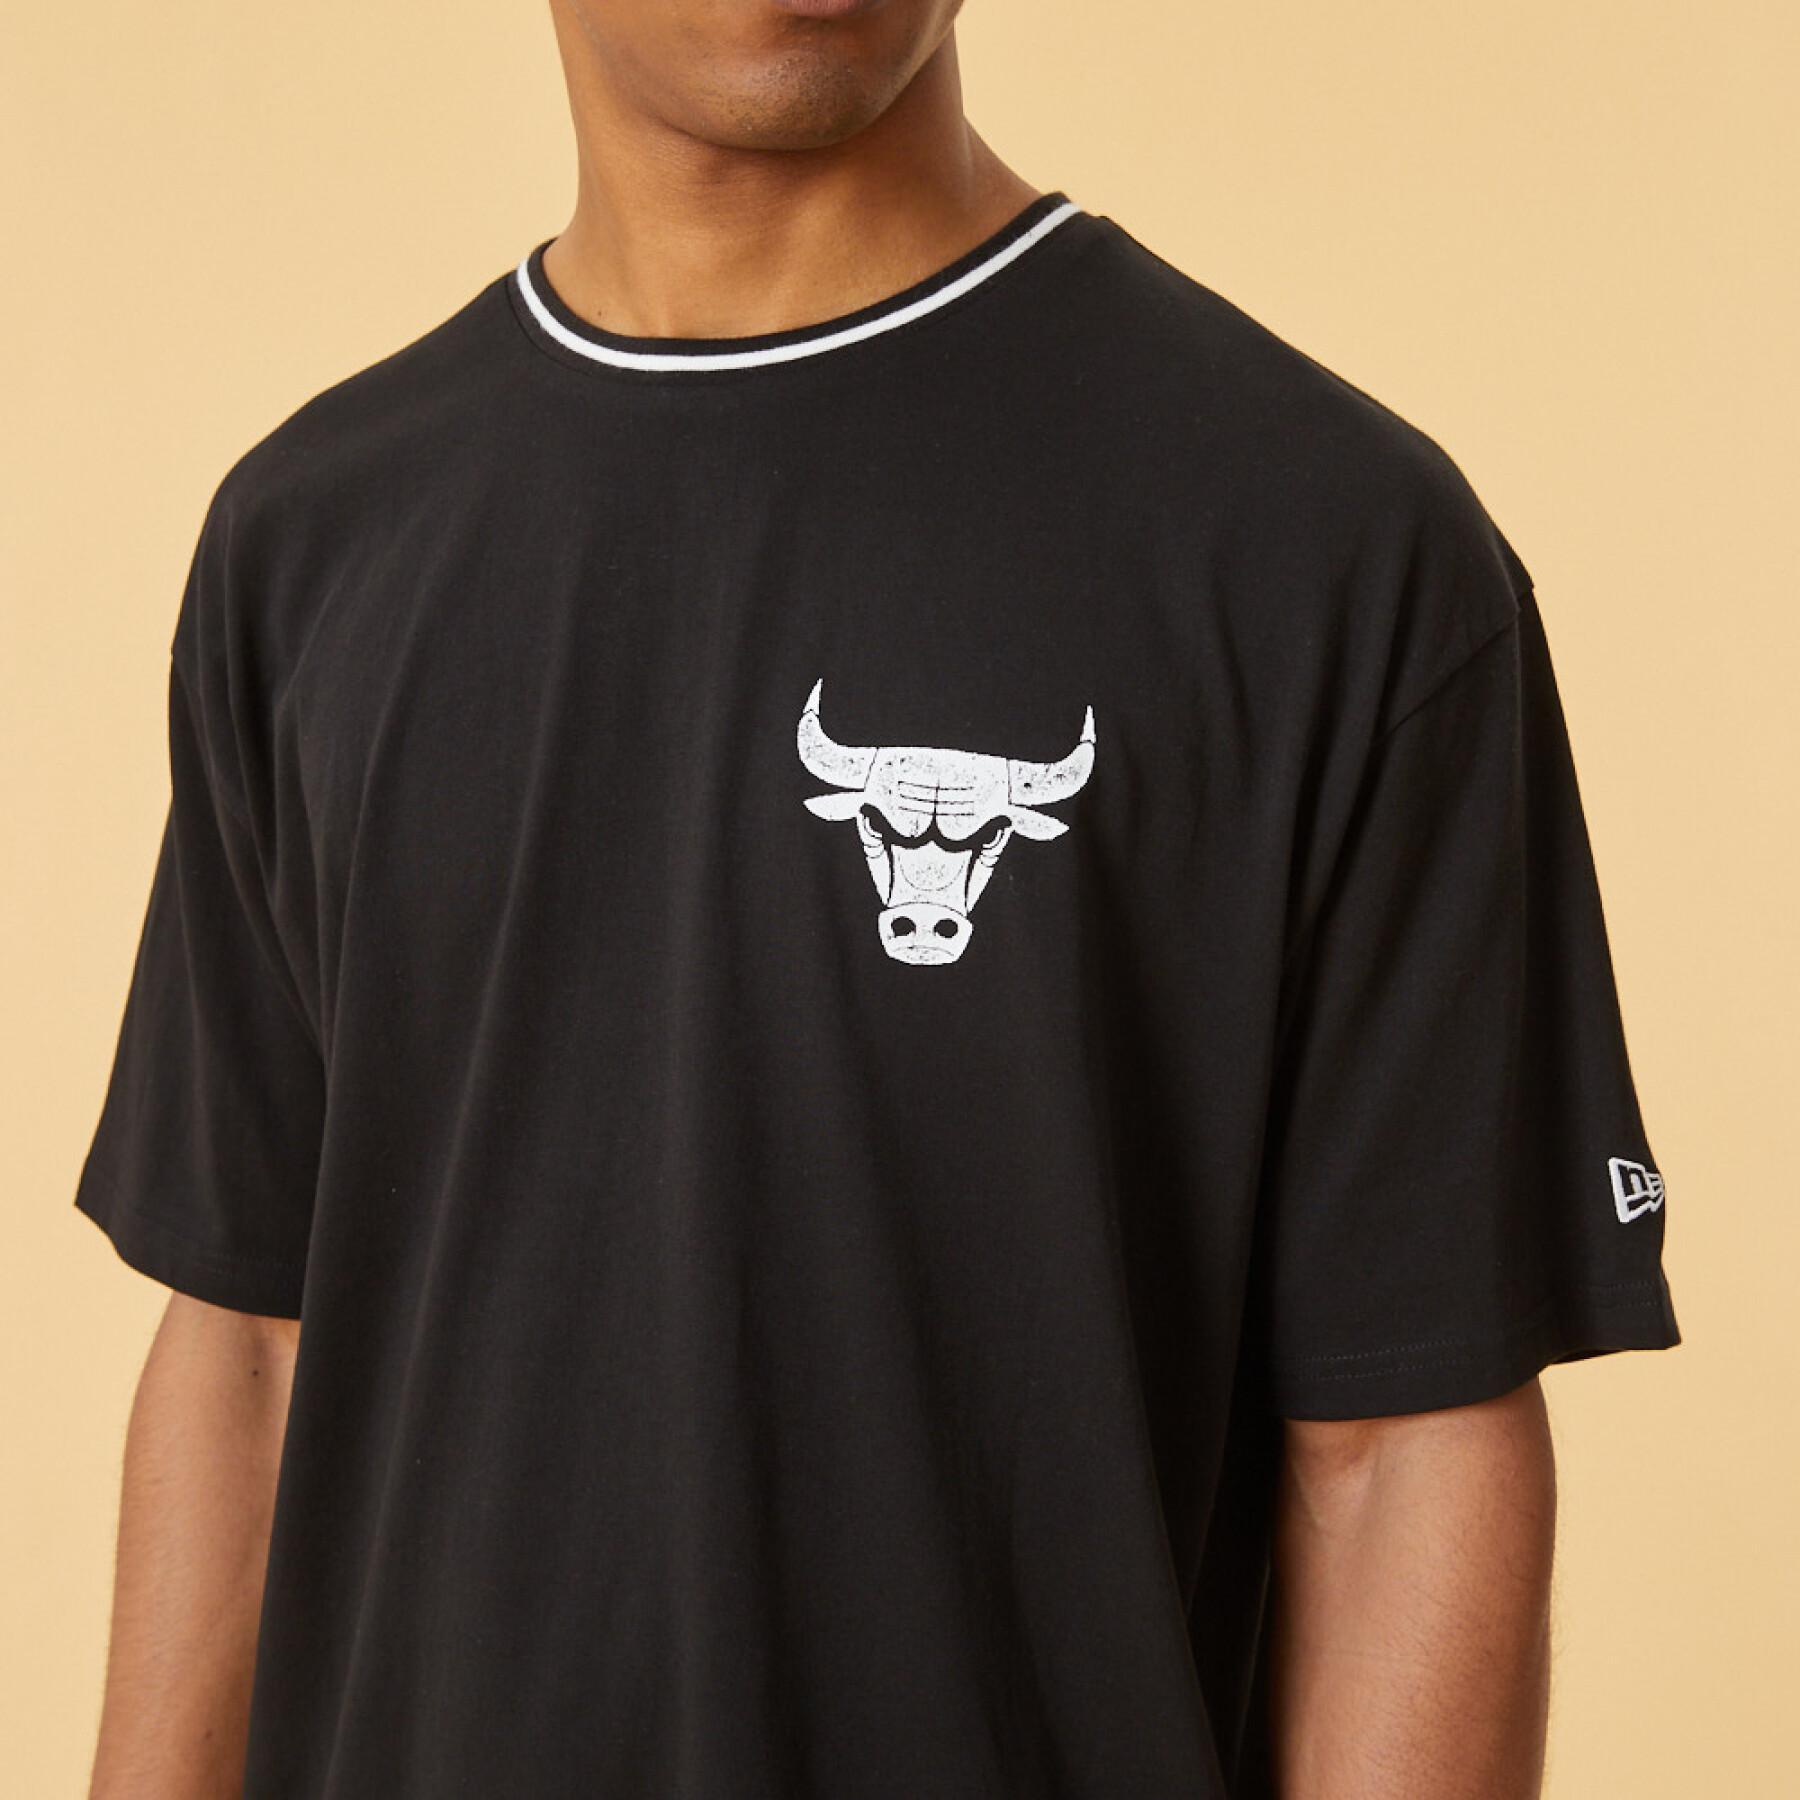 Graphic T-shirt Chicago Bulls